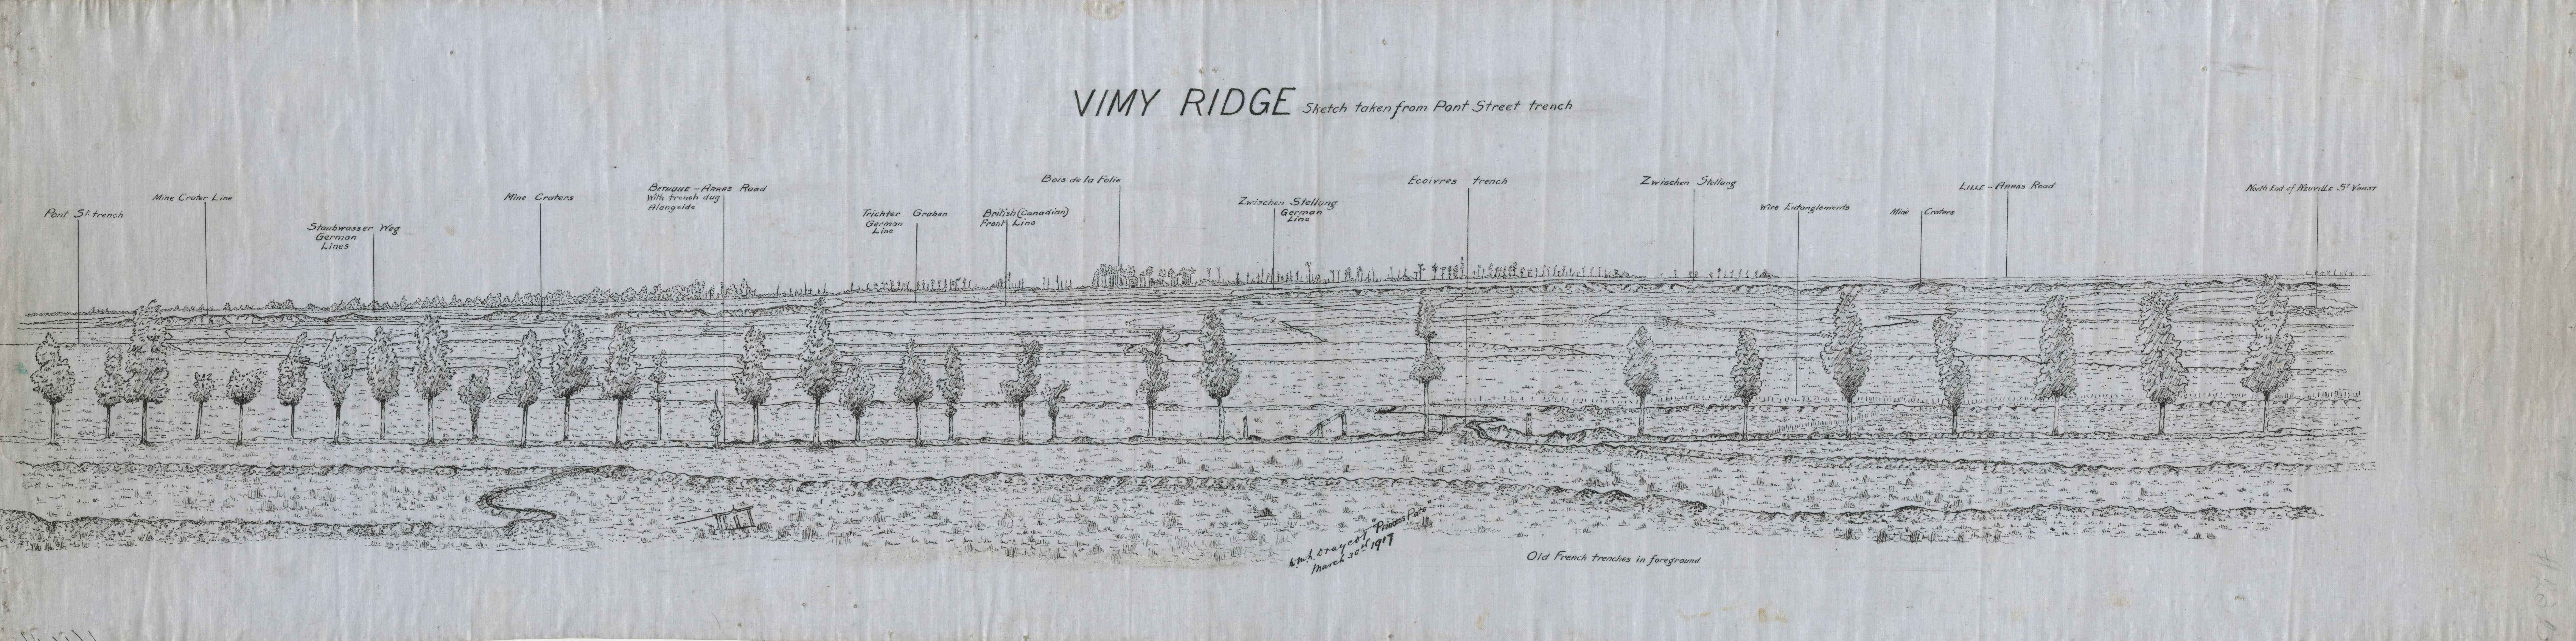 Croquis en longueur de type panorama de la crête de Vimy. Les éléments principaux sont indiqués. Les tranchées, les arbres et les variations de relief sont visibles. Les distances sont difficiles à déterminer.